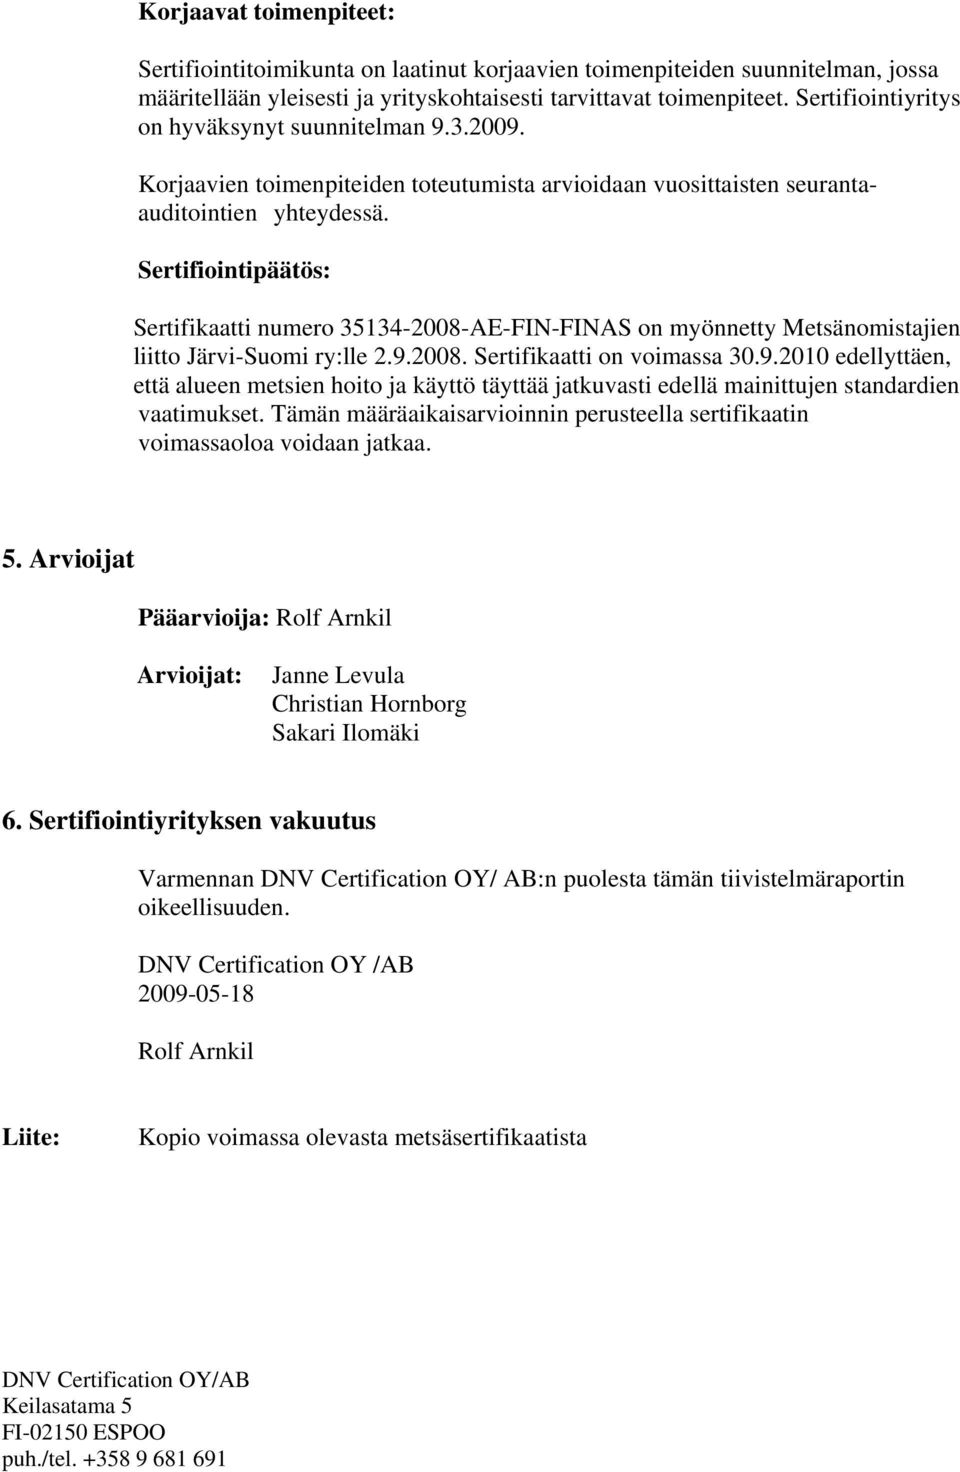 Sertifiointipäätös: Sertifikaatti numero 35134-2008-AE-FIN-FINAS on myönnetty Metsänomistajien liitto Järvi-Suomi ry:lle 2.9.